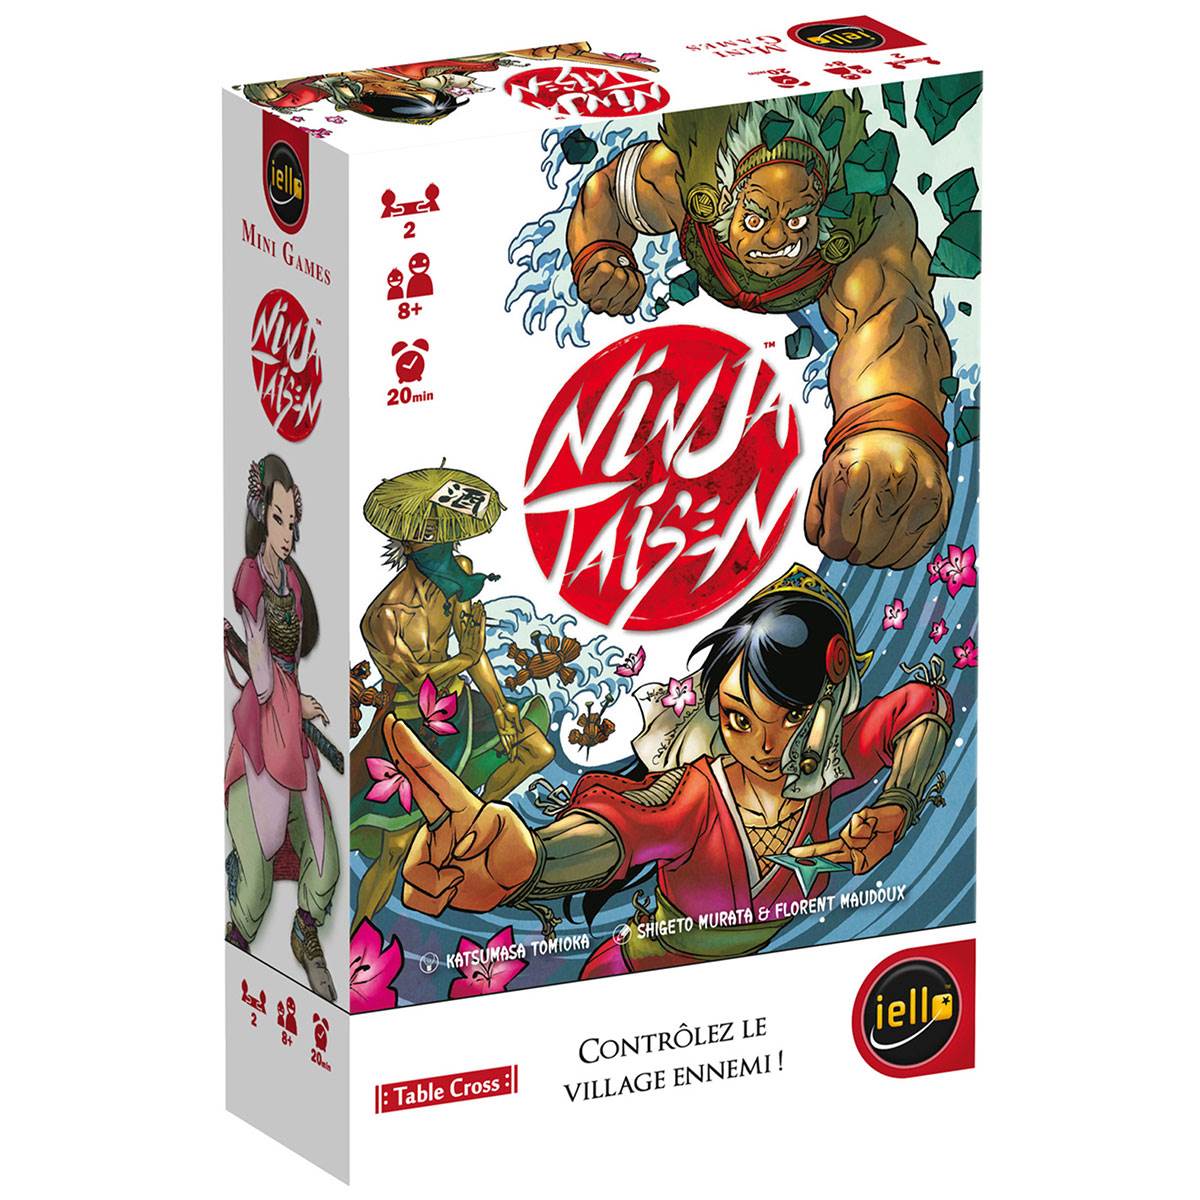 Box jeux de société en location ninja Taisen meilleur 2 joueurs japon enfants famille découvrir test initiation nouveau nouveauté tester famille chifoumi pierre cailloux ciseaux